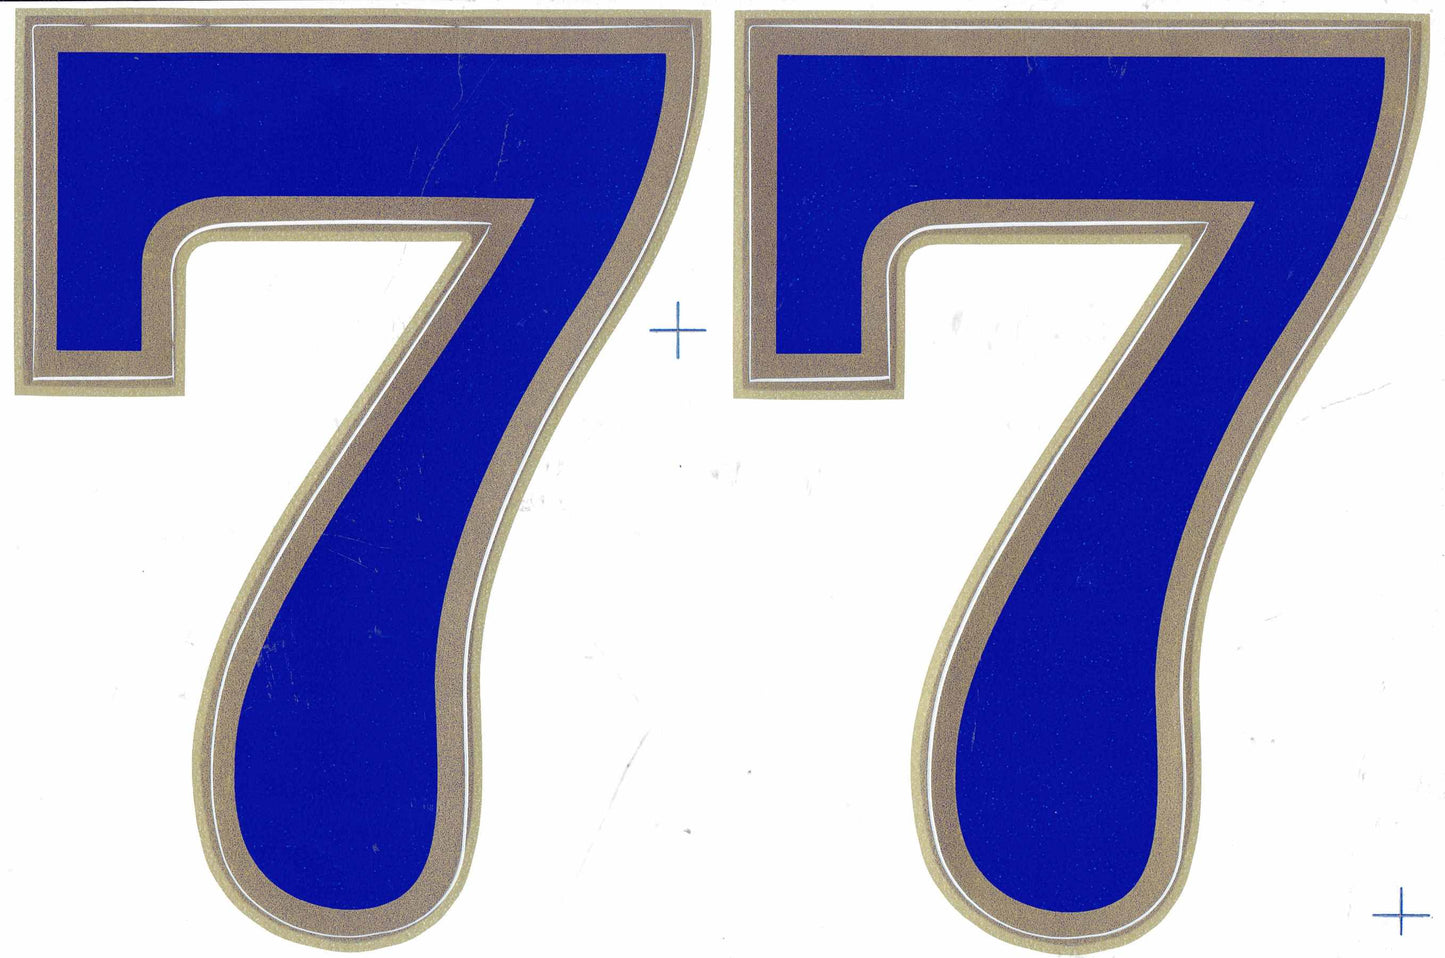 Großer Blauer Nummer 7 Aufkleber - 165 mm Höhe - Ideal für Motorrad, Roller, Skateboard, Auto Tuning, Modellbau - Selbstklebend Sticker